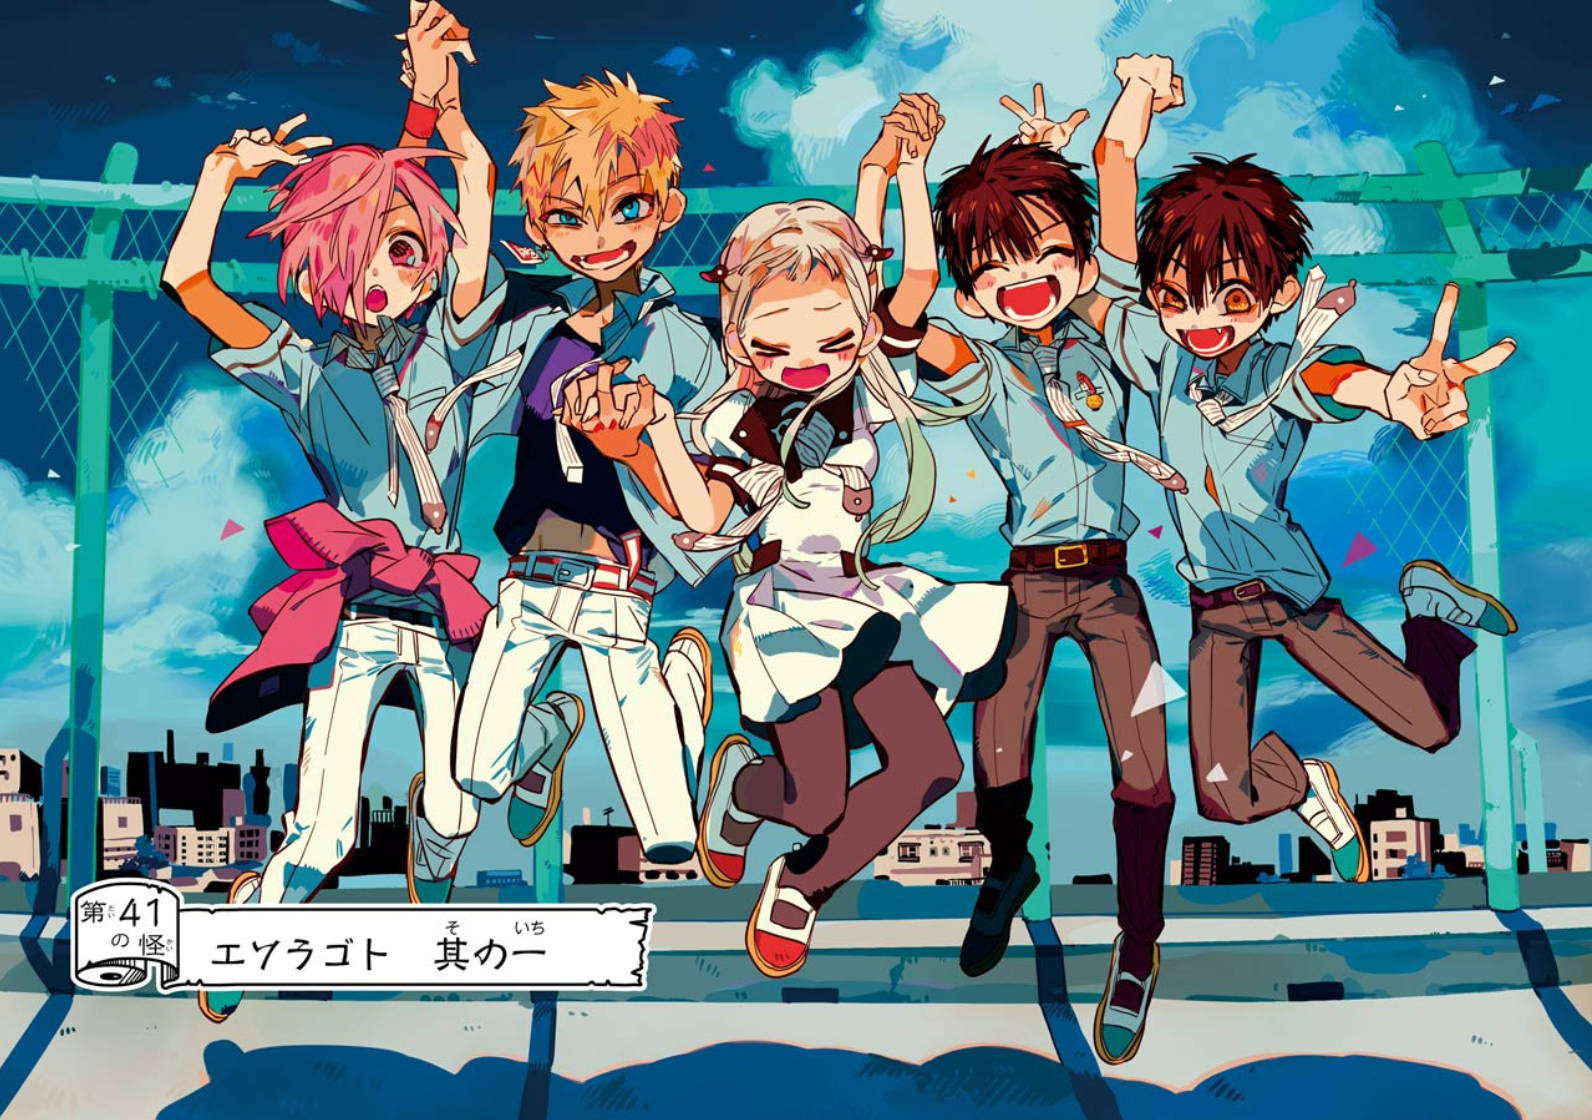 Ungrupo De Personajes De Anime Saltando En El Aire. Fondo de pantalla